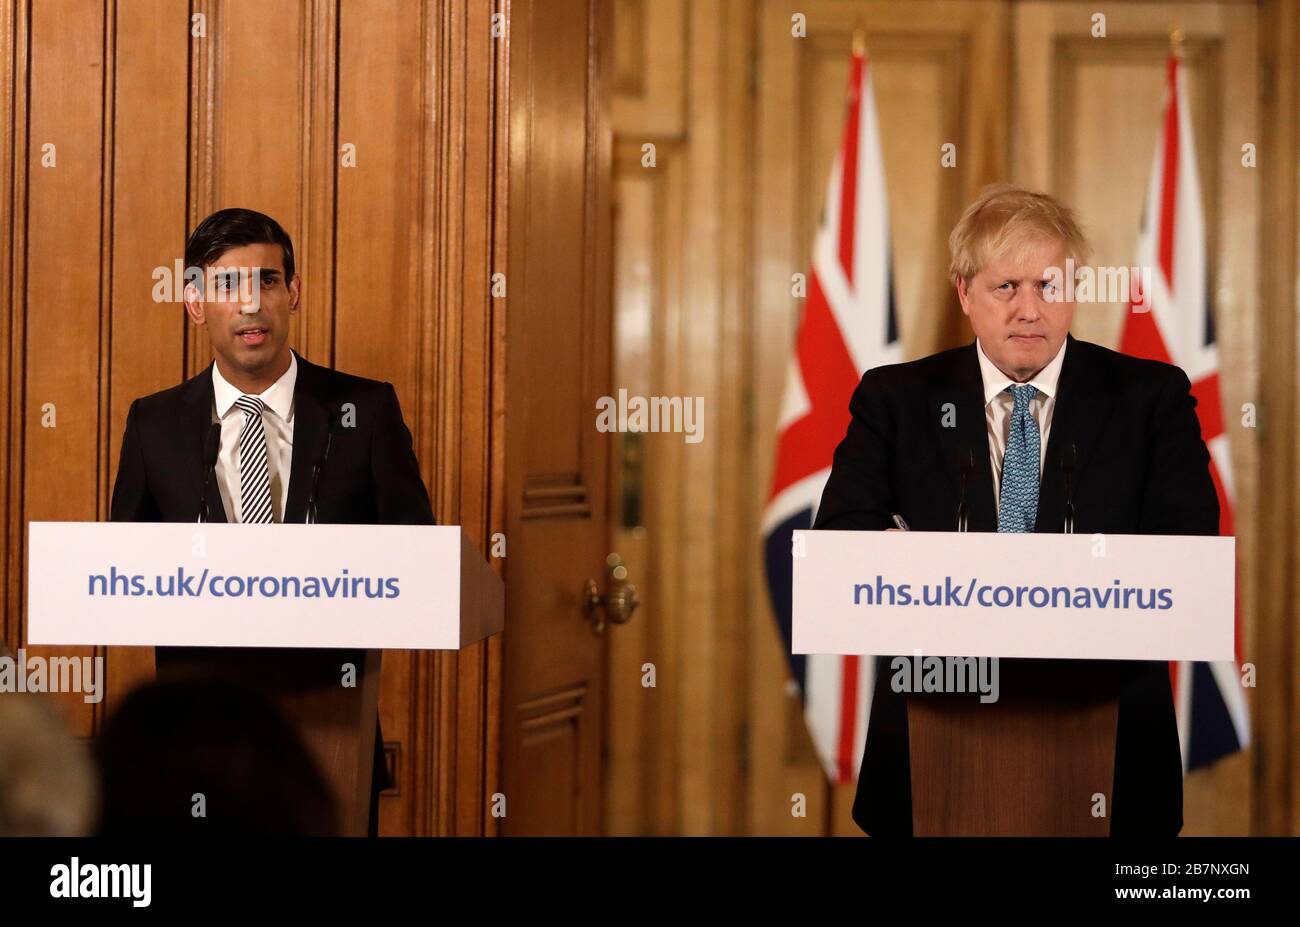 Le chancelier Rishi Sunak et le Premier ministre Boris Johnson lors d'un exposé médiatique à Downing Street, Londres, sur Coronavirus (COVID-19). Date de l'image: Mardi 17 mars 2020. Voir l'histoire de PA SANTÉ Coronavirus. Crédit photo devrait lire: Matt Dunham/PA fil Banque D'Images